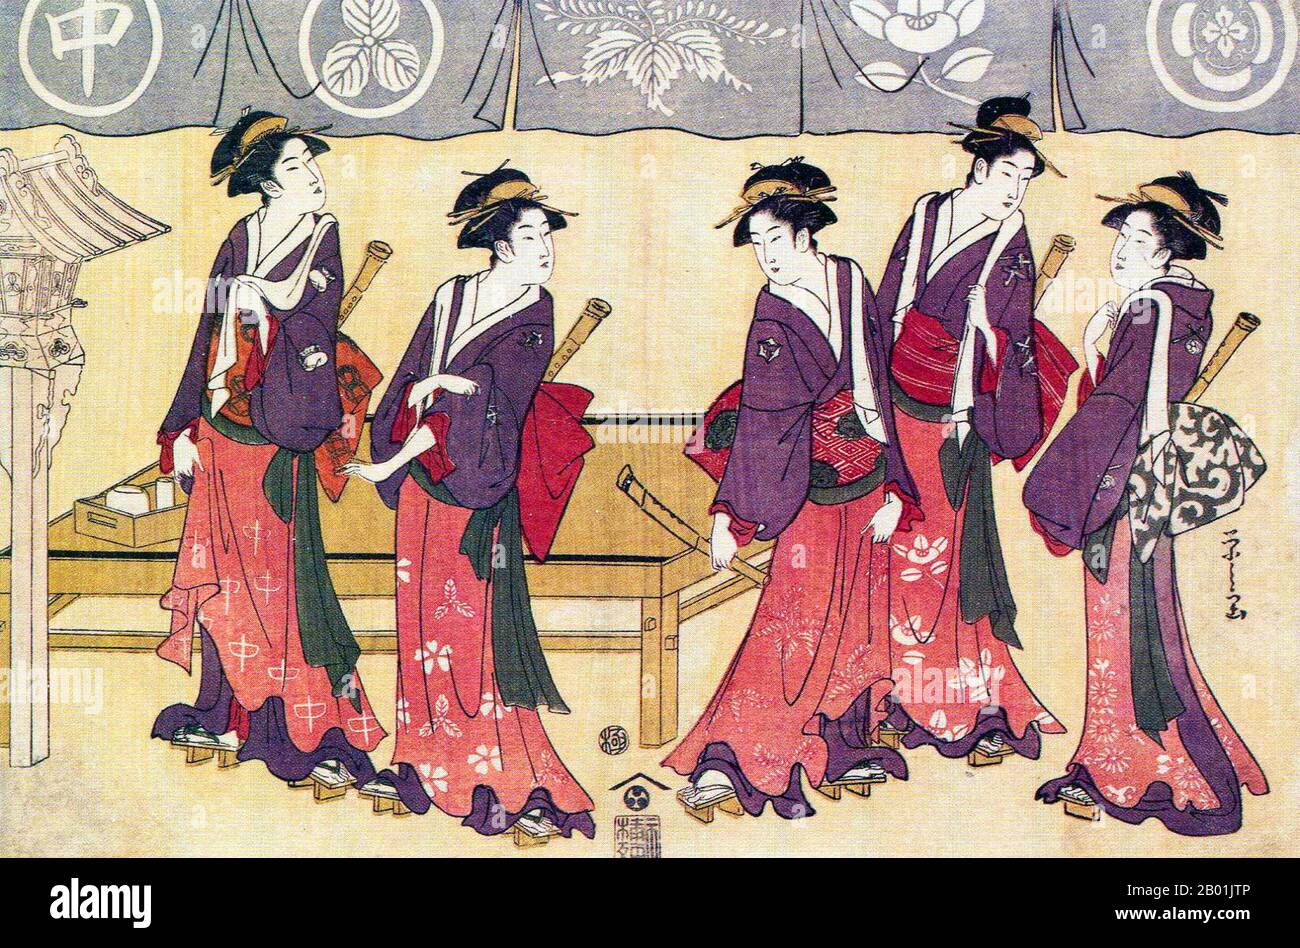 Japan: "Fünf Teehauswartinnen". Ukiyo-e Holzschnitt von Chobunsai Eishi (1756-1829), 1793. Chobunsai Eishi, wahrer Name Hosoda Tokitomi, war ein japanischer Ukiyo-e-Künstler aus der Edo-Zeit. Aus einer wohlhabenden Samurai-Familie und dem ersten Sohn eines direkten Vasallen des Shogunats verließ er die Arbeit des Shogun, um der Kunst nachzugehen, wobei seine frühesten Drucke hauptsächlich Bijin-GA (Beauty)-Porträts waren. Er gründete schließlich eine eigene Schule, die mit der von Kitagawa Utamaro konkurrierte, und war ein produktiver Maler, der 1801 die Druckerei aufgab, um sich ausschließlich auf die Malerei zu konzentrieren. Stockfoto